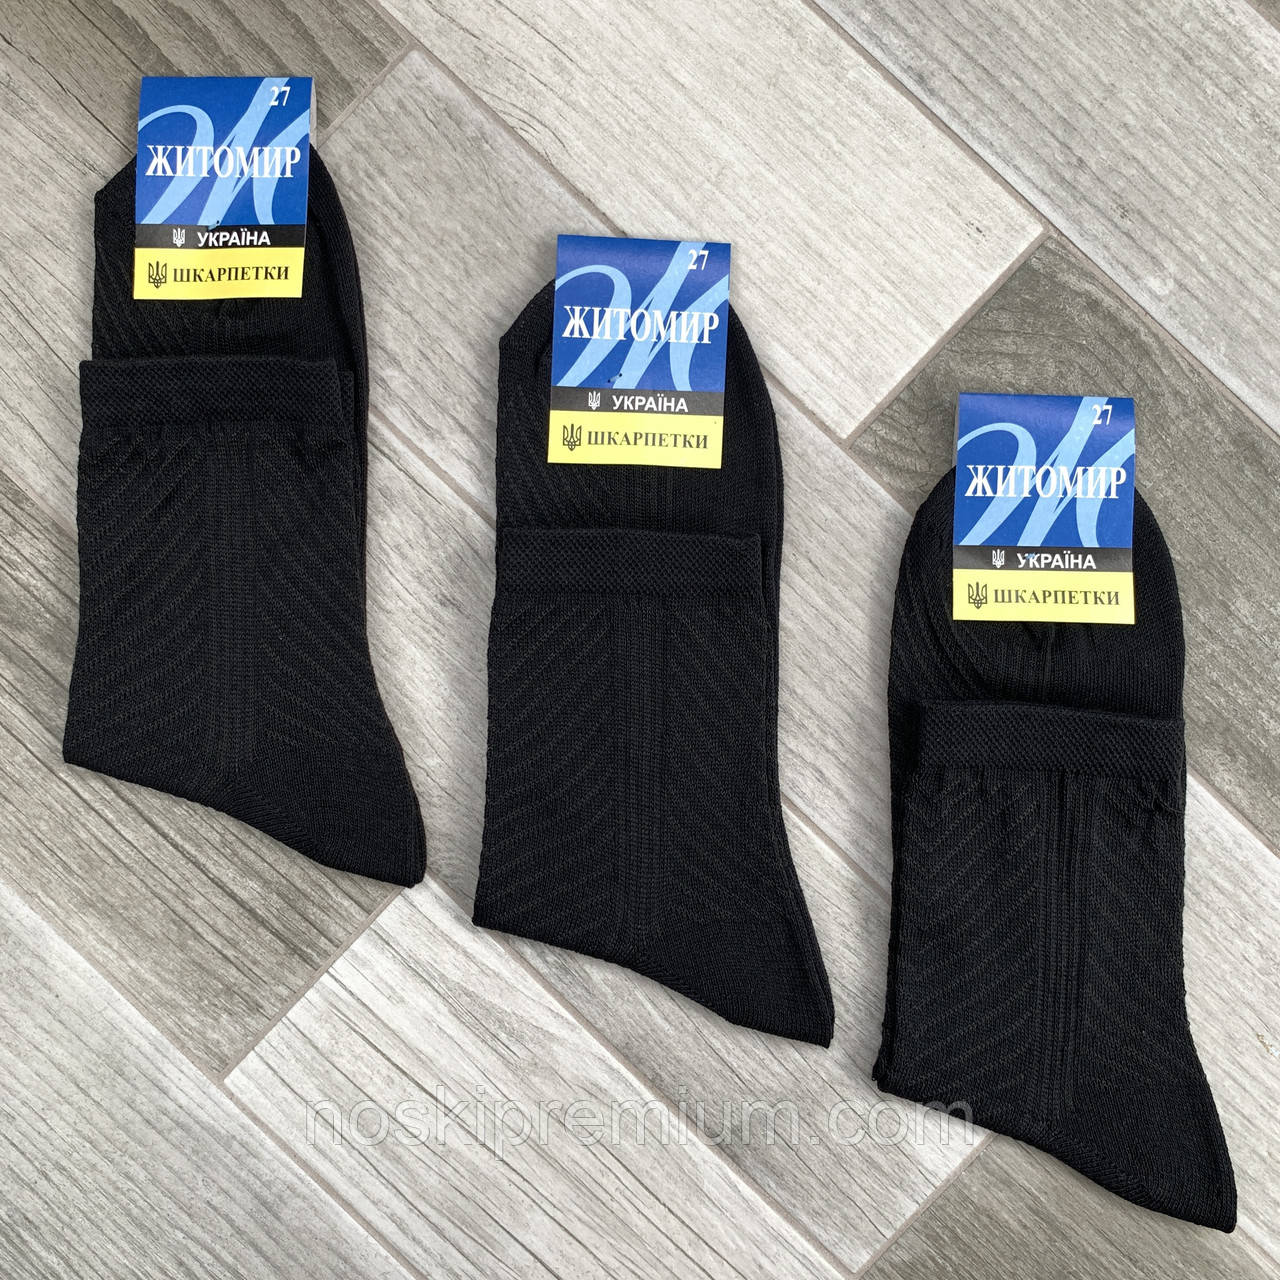 Шкарпетки чоловічі бавовна із сіткою ялинка Житомир Україна Premium, розмір 31, чорні, 08656